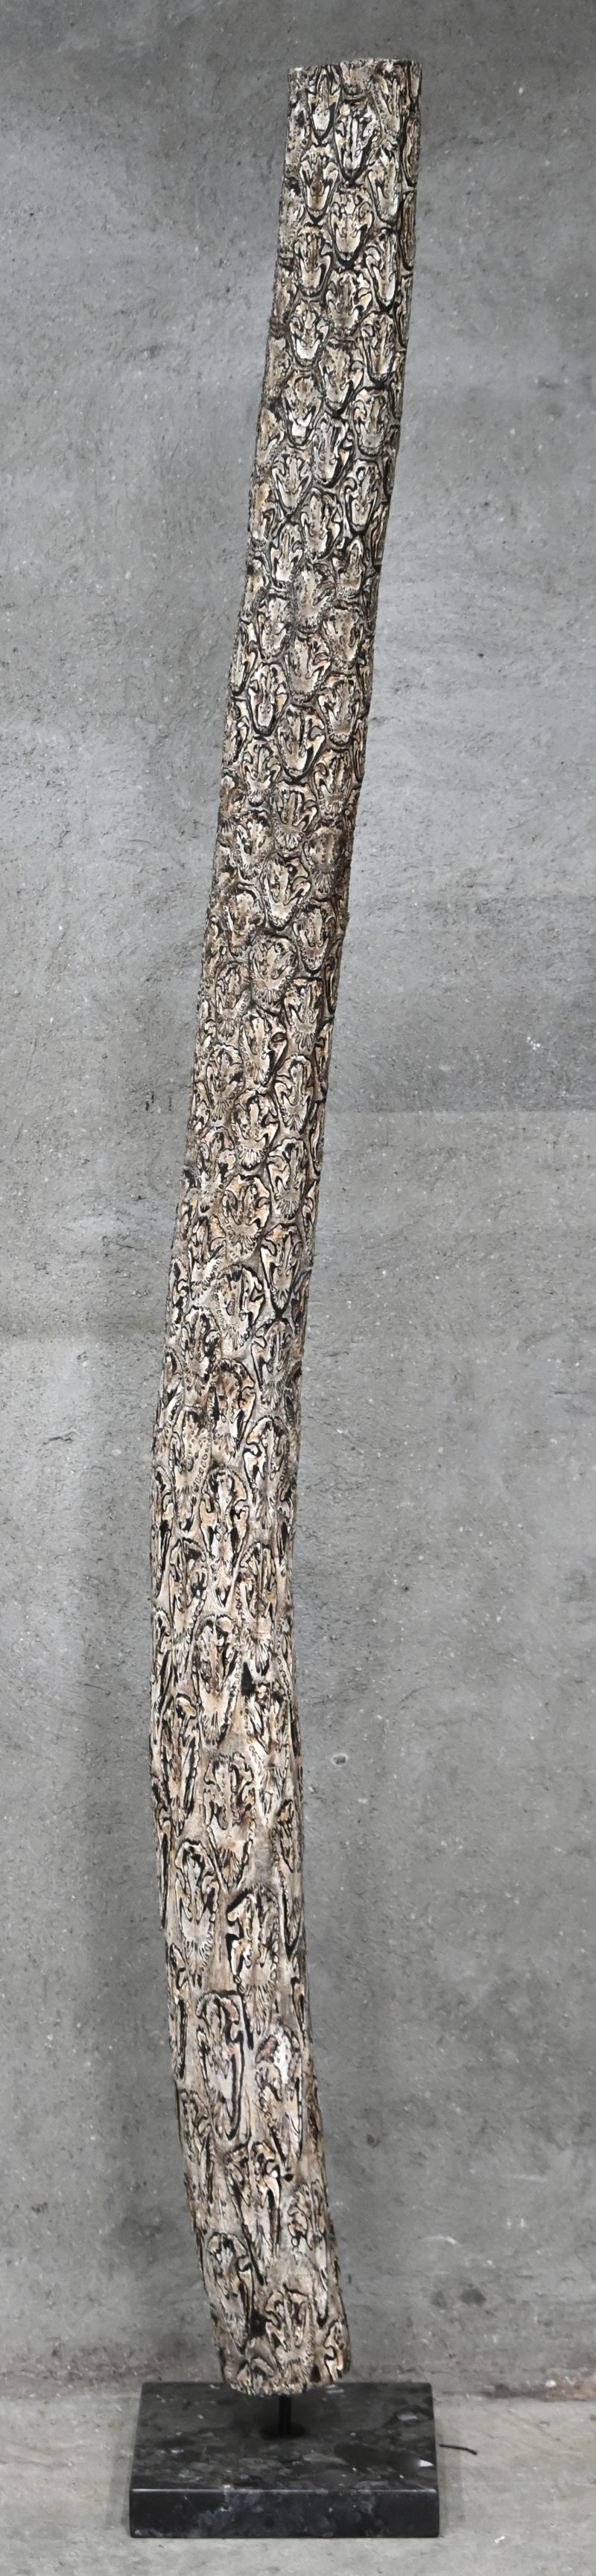 Een boomstronk in tropisch hout op een marmeren sokkel gemonteerd.